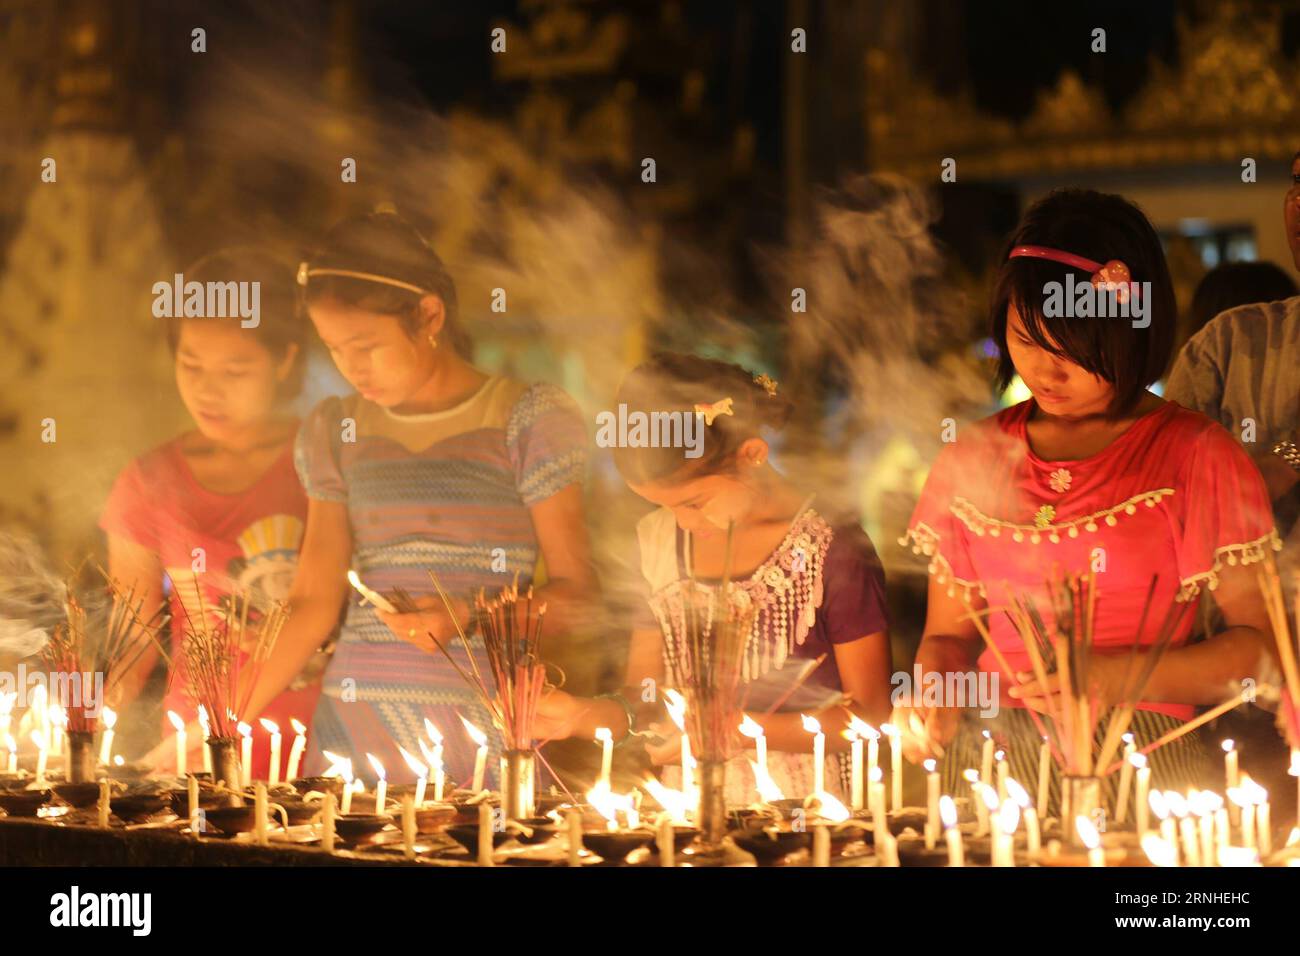 Mädchen zünden Kerzen auf Myanmars traditionellem Tazaungdaing-Festival in der Shwedagon-Pagode in Yangon, Myanmar, 13. November 2016. Das Tazaungdaing Festival, auch bekannt als das Festival der Lichter, das im achten Monat des traditionellen myanmarischen Kalenders auf den Vollmondtag fällt, wird als Nationalfeiertag in Myanmar gefeiert und markiert das Ende der Regenzeit. ) (zw) MYANMAR-YANGON-TAZAUNGDAING FESTIVAL UxAung PUBLICATIONxNOTxINxCHN Girls Light Candles ON Myanmar S Traditional Tazaungdaing Festival AT the Shwedagon Pagoda in Yangon Myanmar 13. November 2016 das Tazaungdaing Festival thus Kno Stockfoto